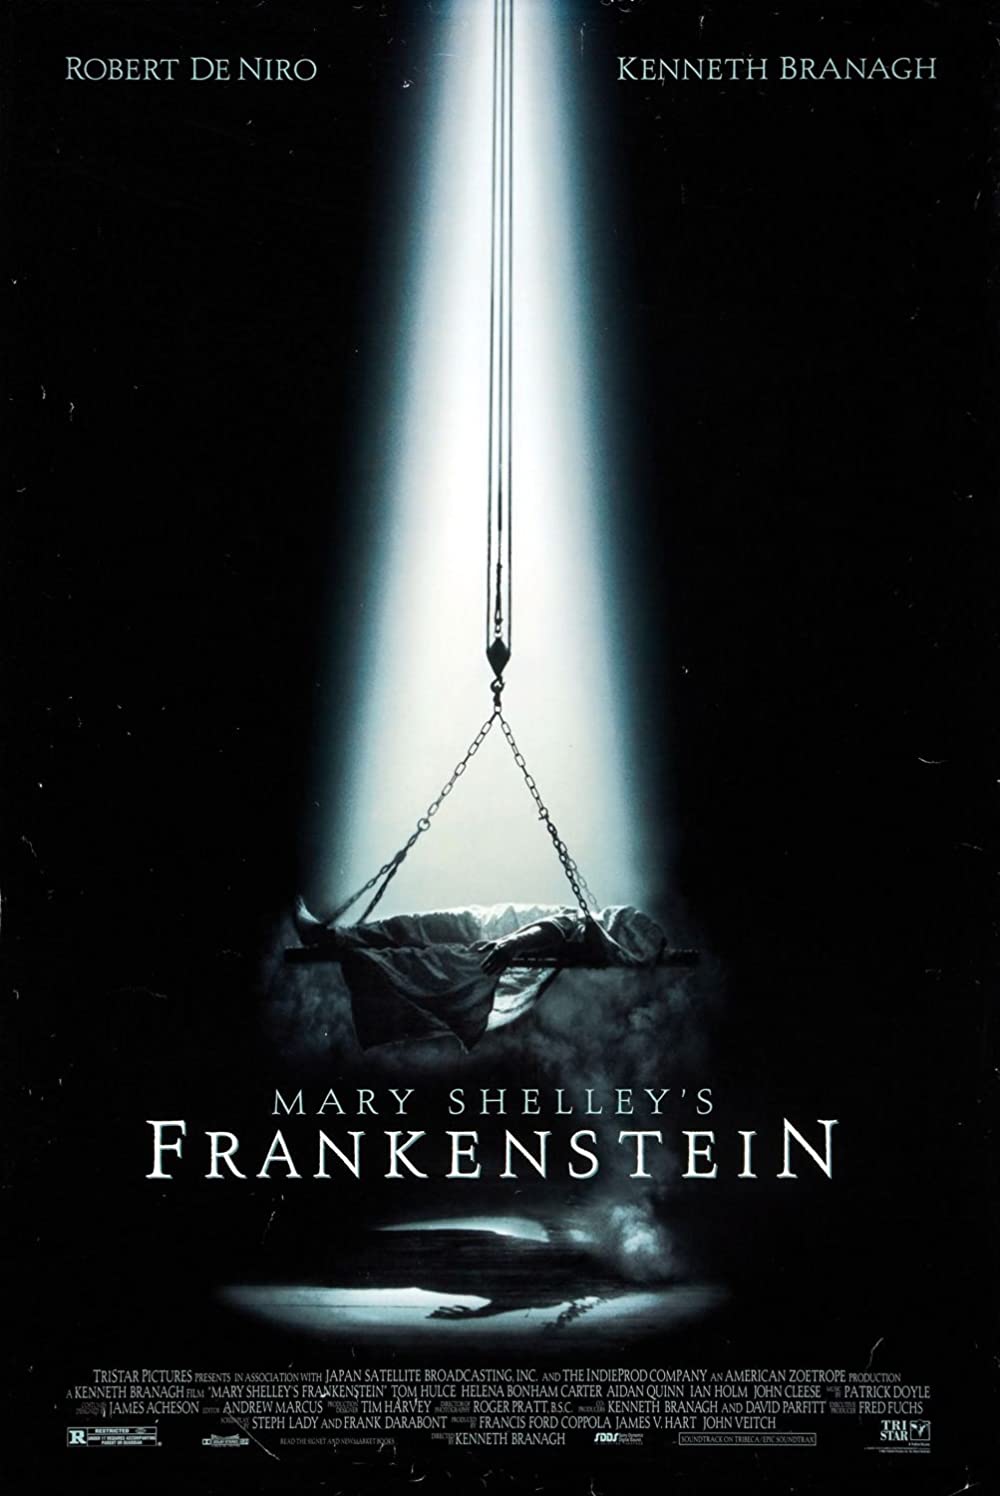 Filmbeschreibung zu Mary Shelley's Frankenstein